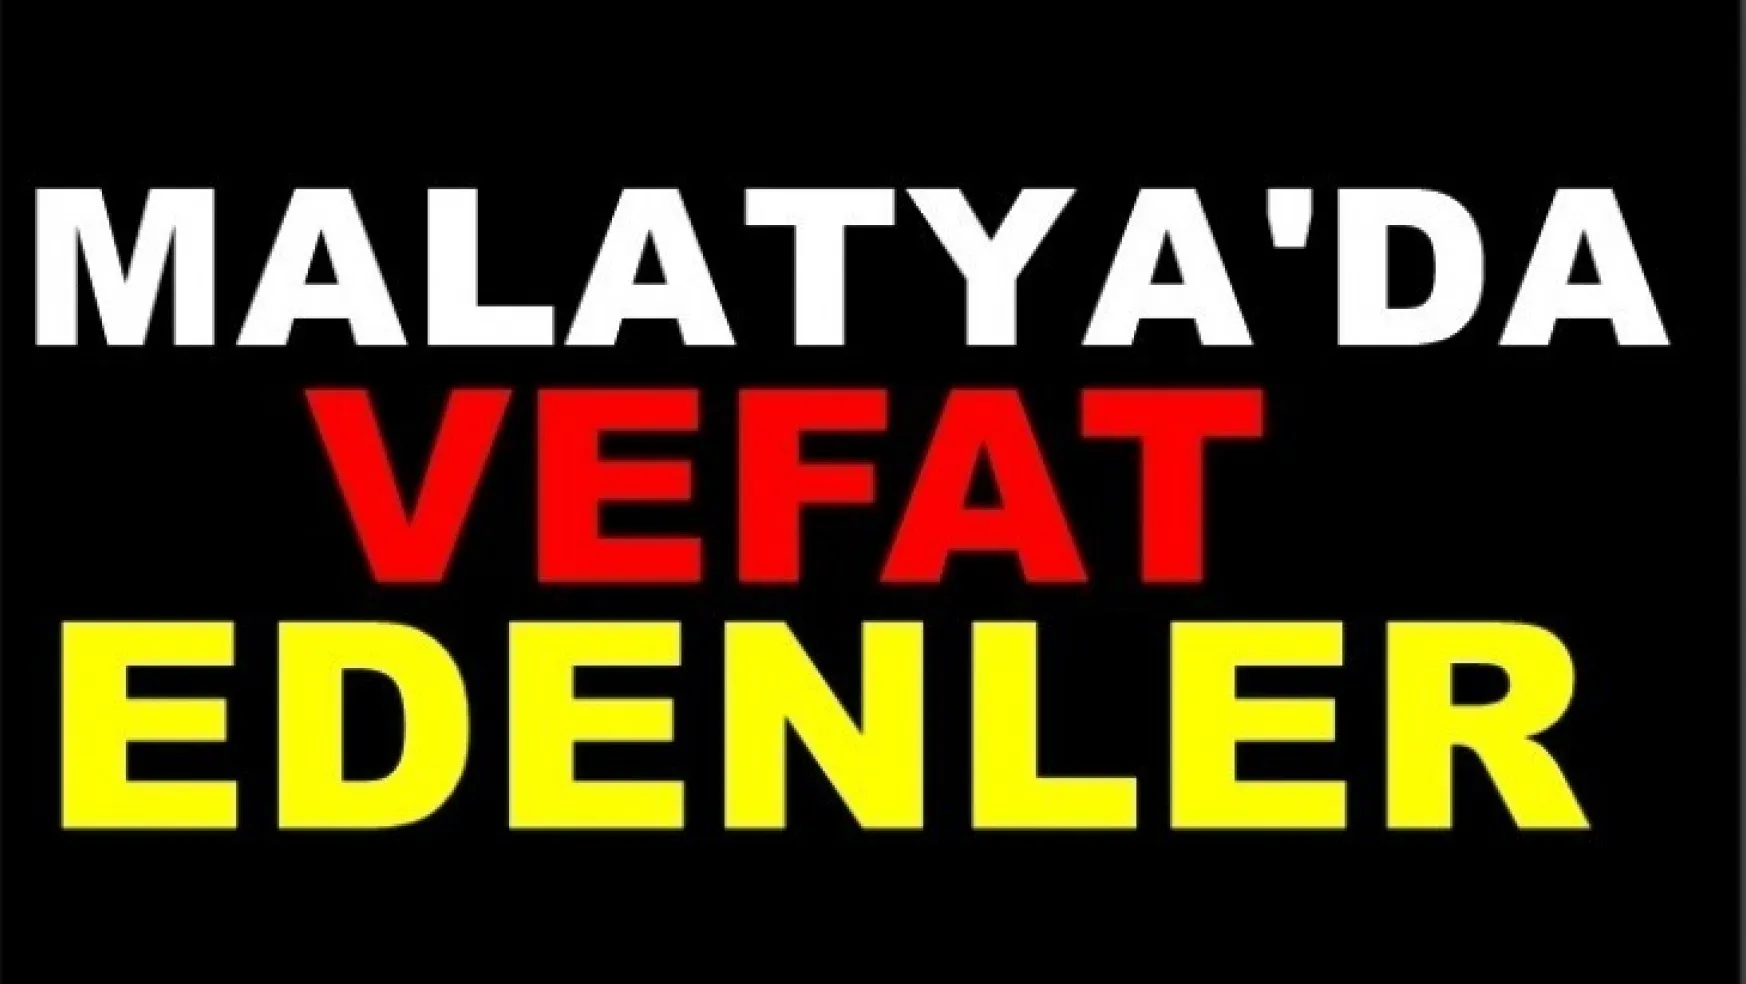 Malatya'da Bugün 11 Kişi Vefat etti.